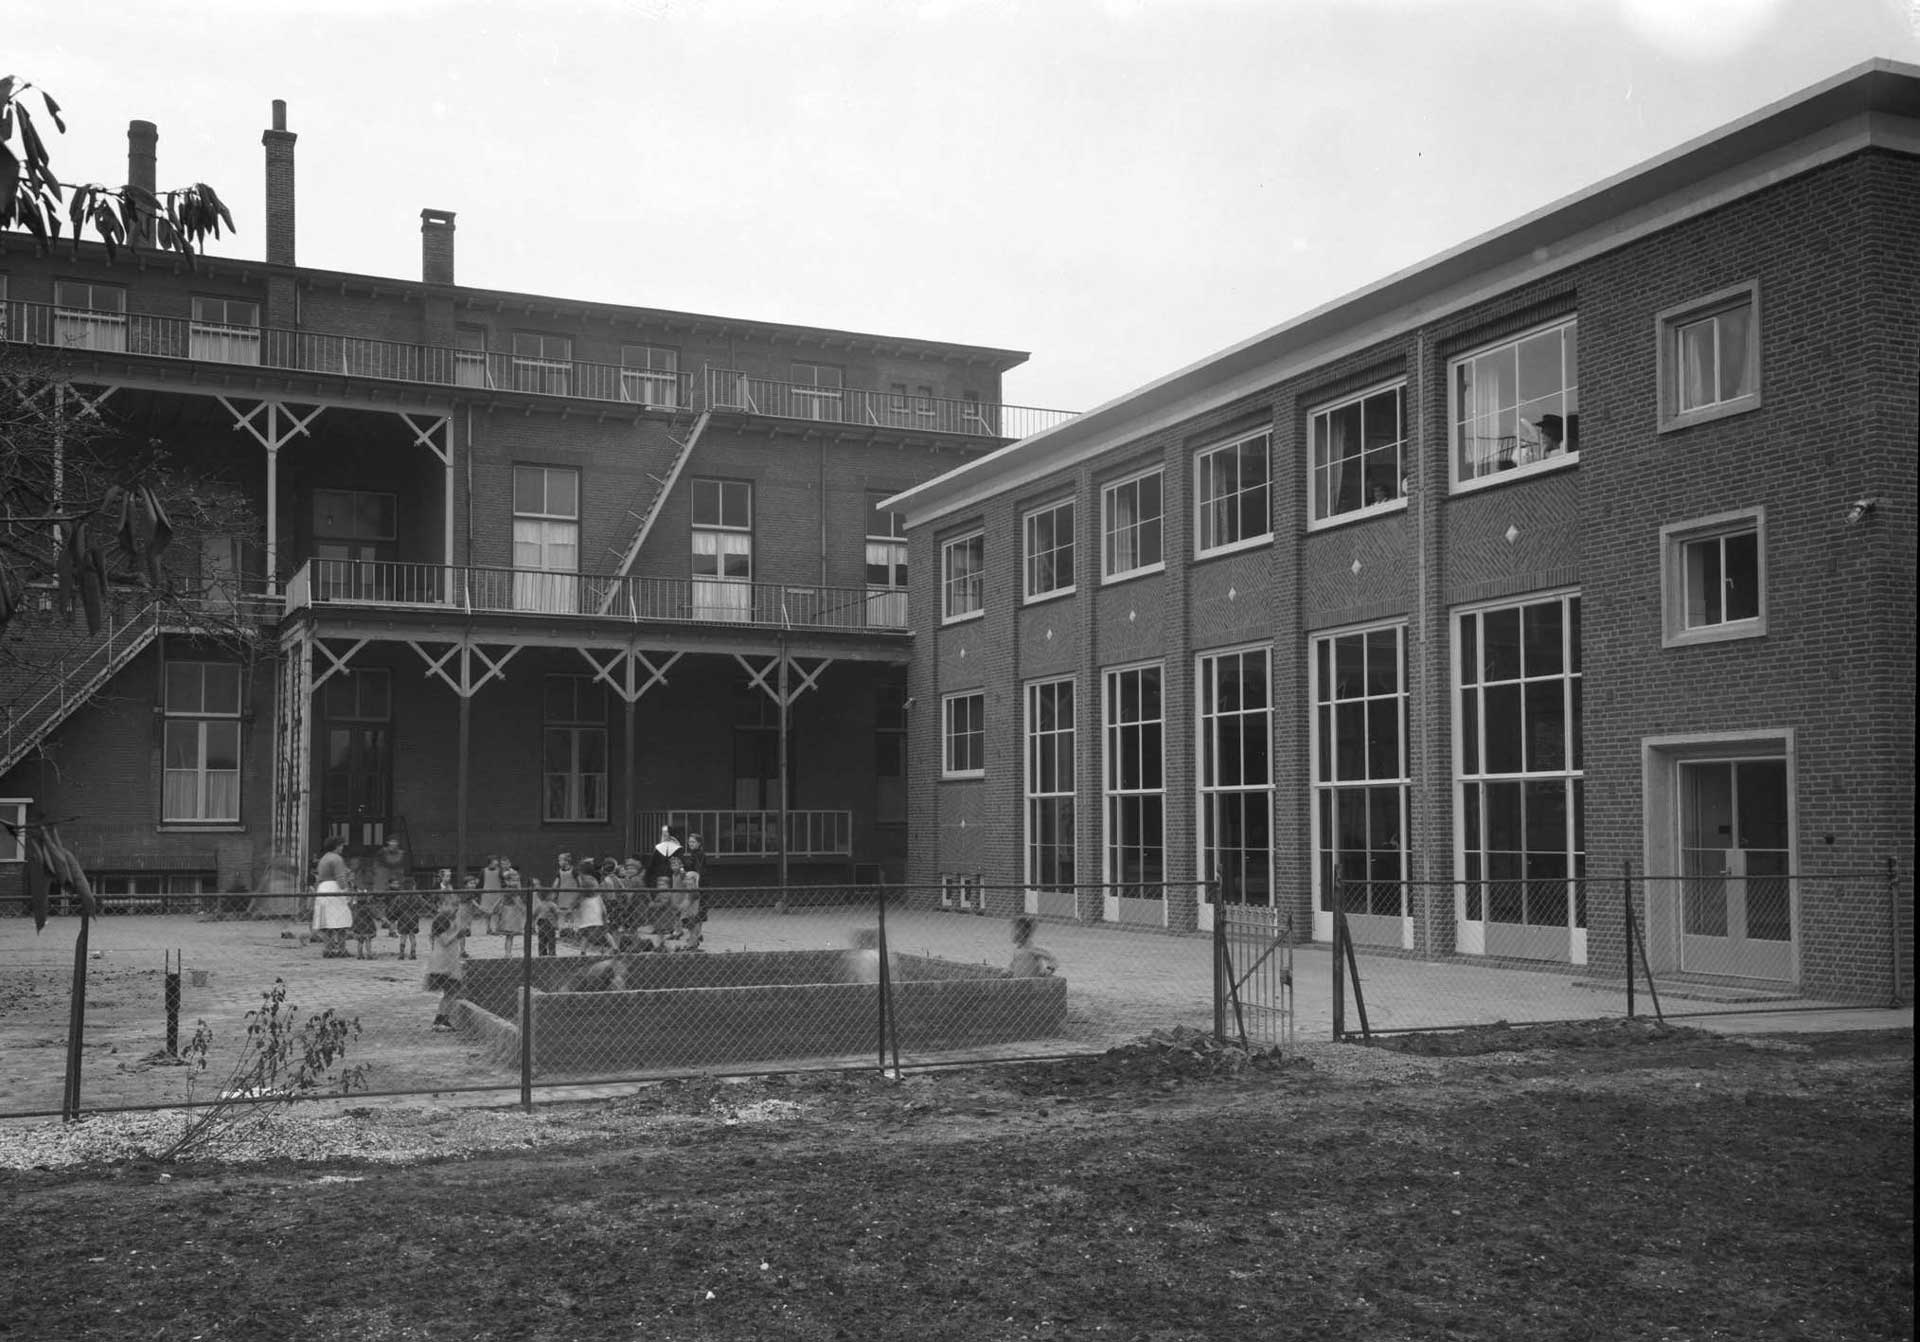 Kindertehuis Sint Agnes in Uden, 1955 (foto: Fotopersbureau Het Zuiden. Bron: BHIC fotonummer 1672-004336)